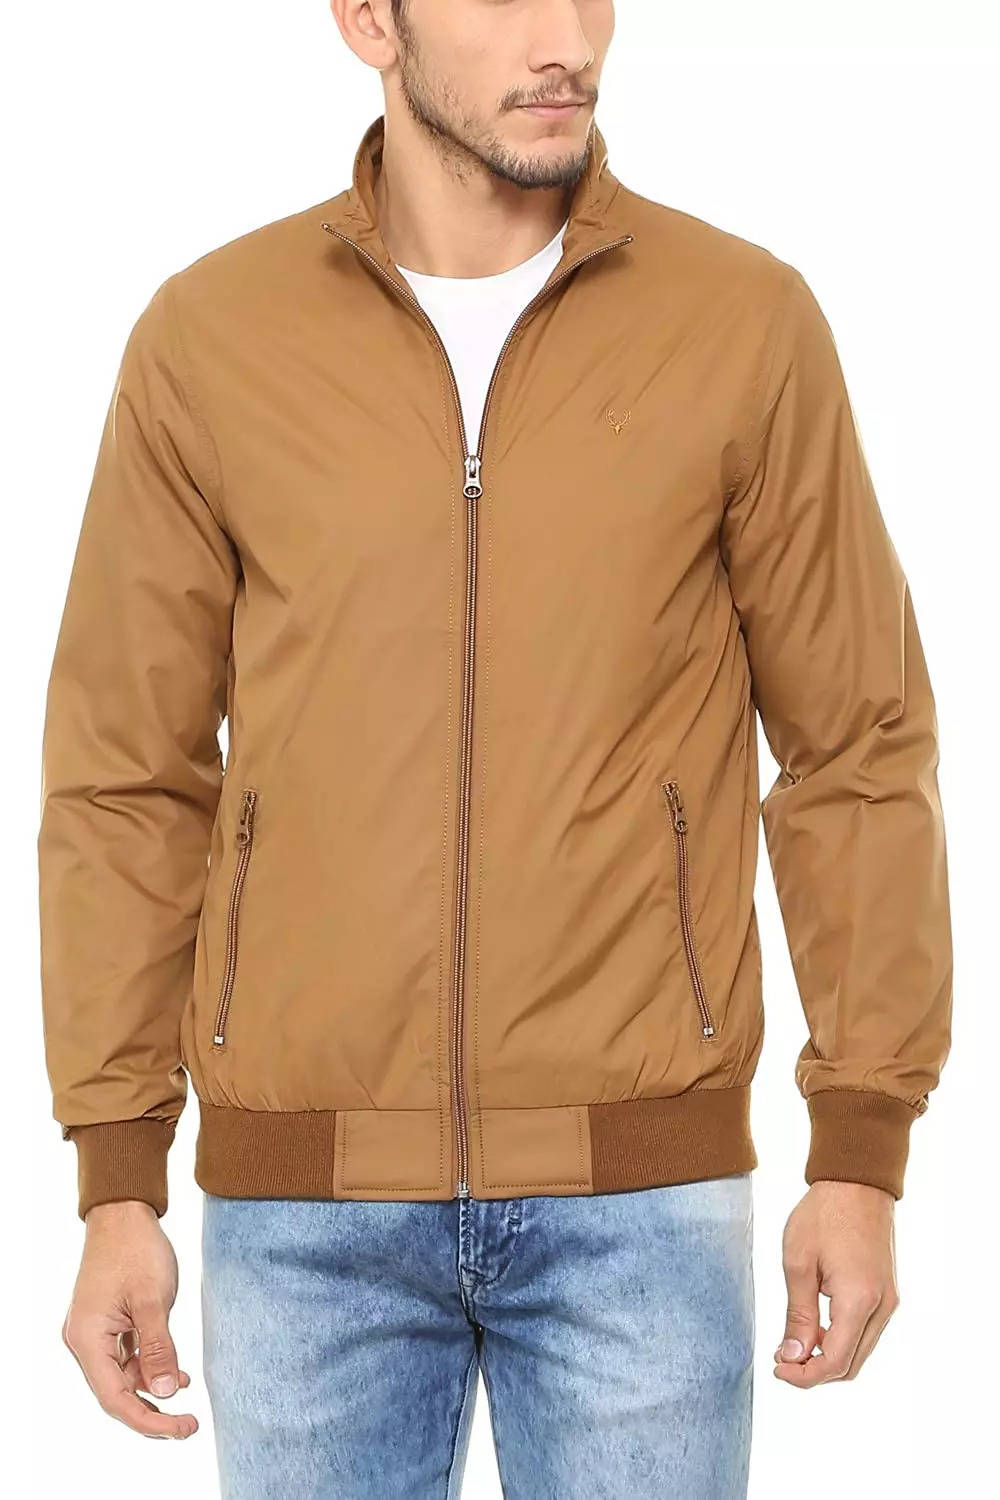 Buy Boys Yellow Solid Regular Fit Jacket Online - 777838 | Allen Solly